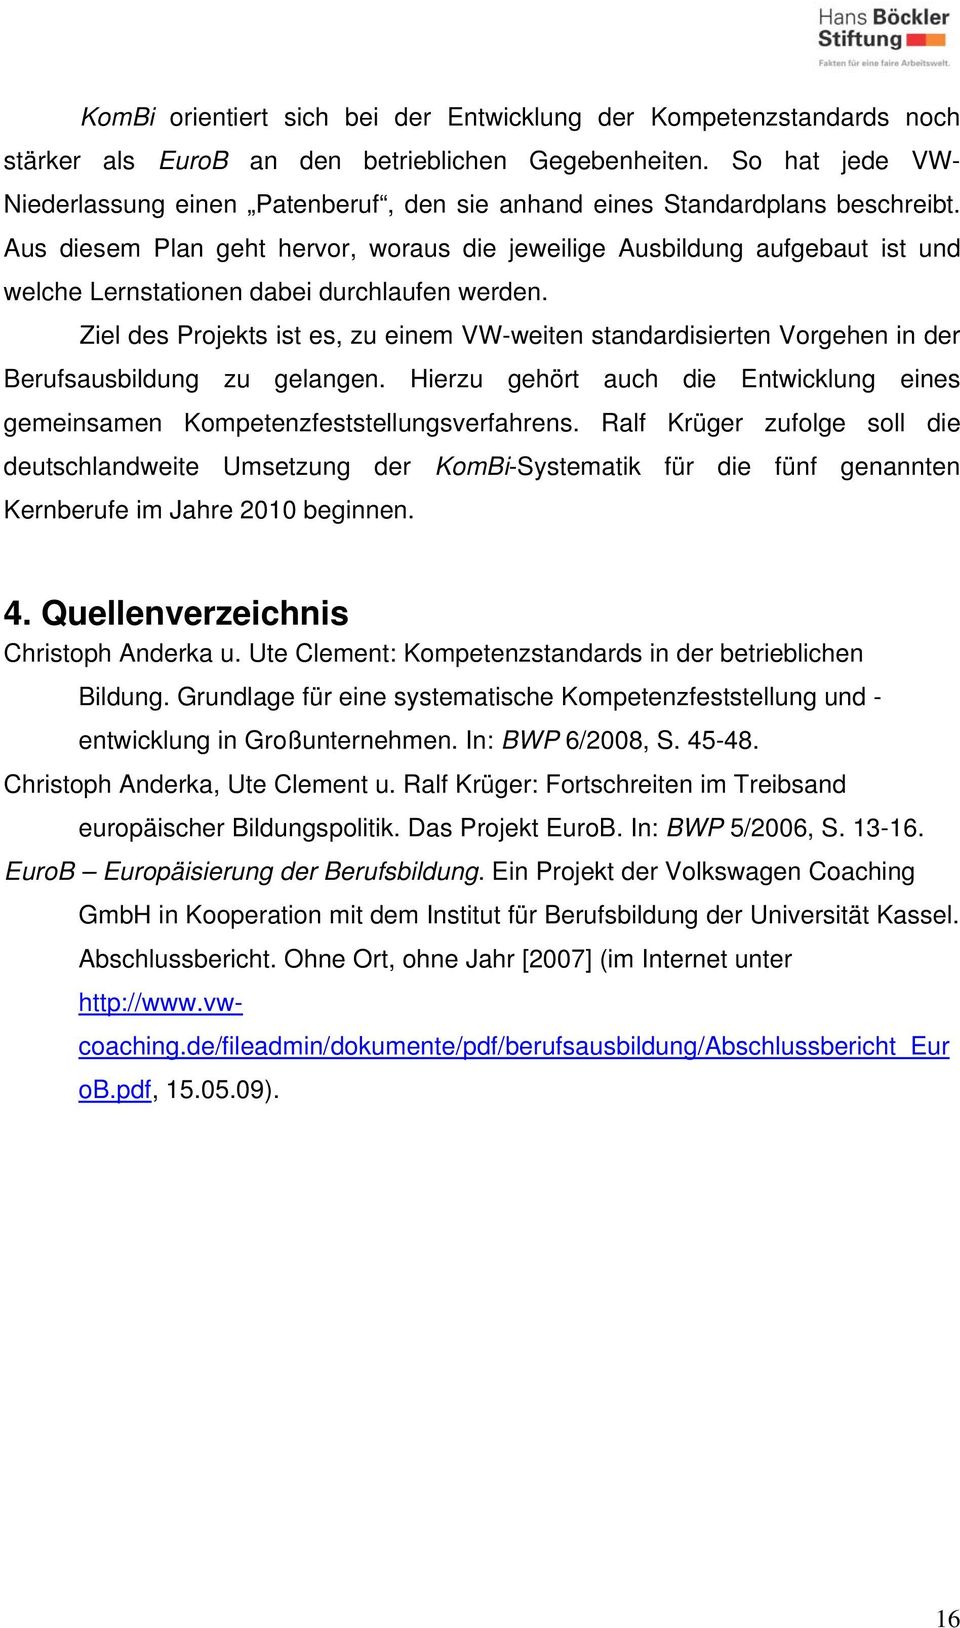 EuroB Europäisierung der Berufsbildung. Ein Projekt der Volkswagen Coaching GmbH in Kooperation mit dem Institut für Berufsbildung der Universität Kassel. Abschlussbericht.